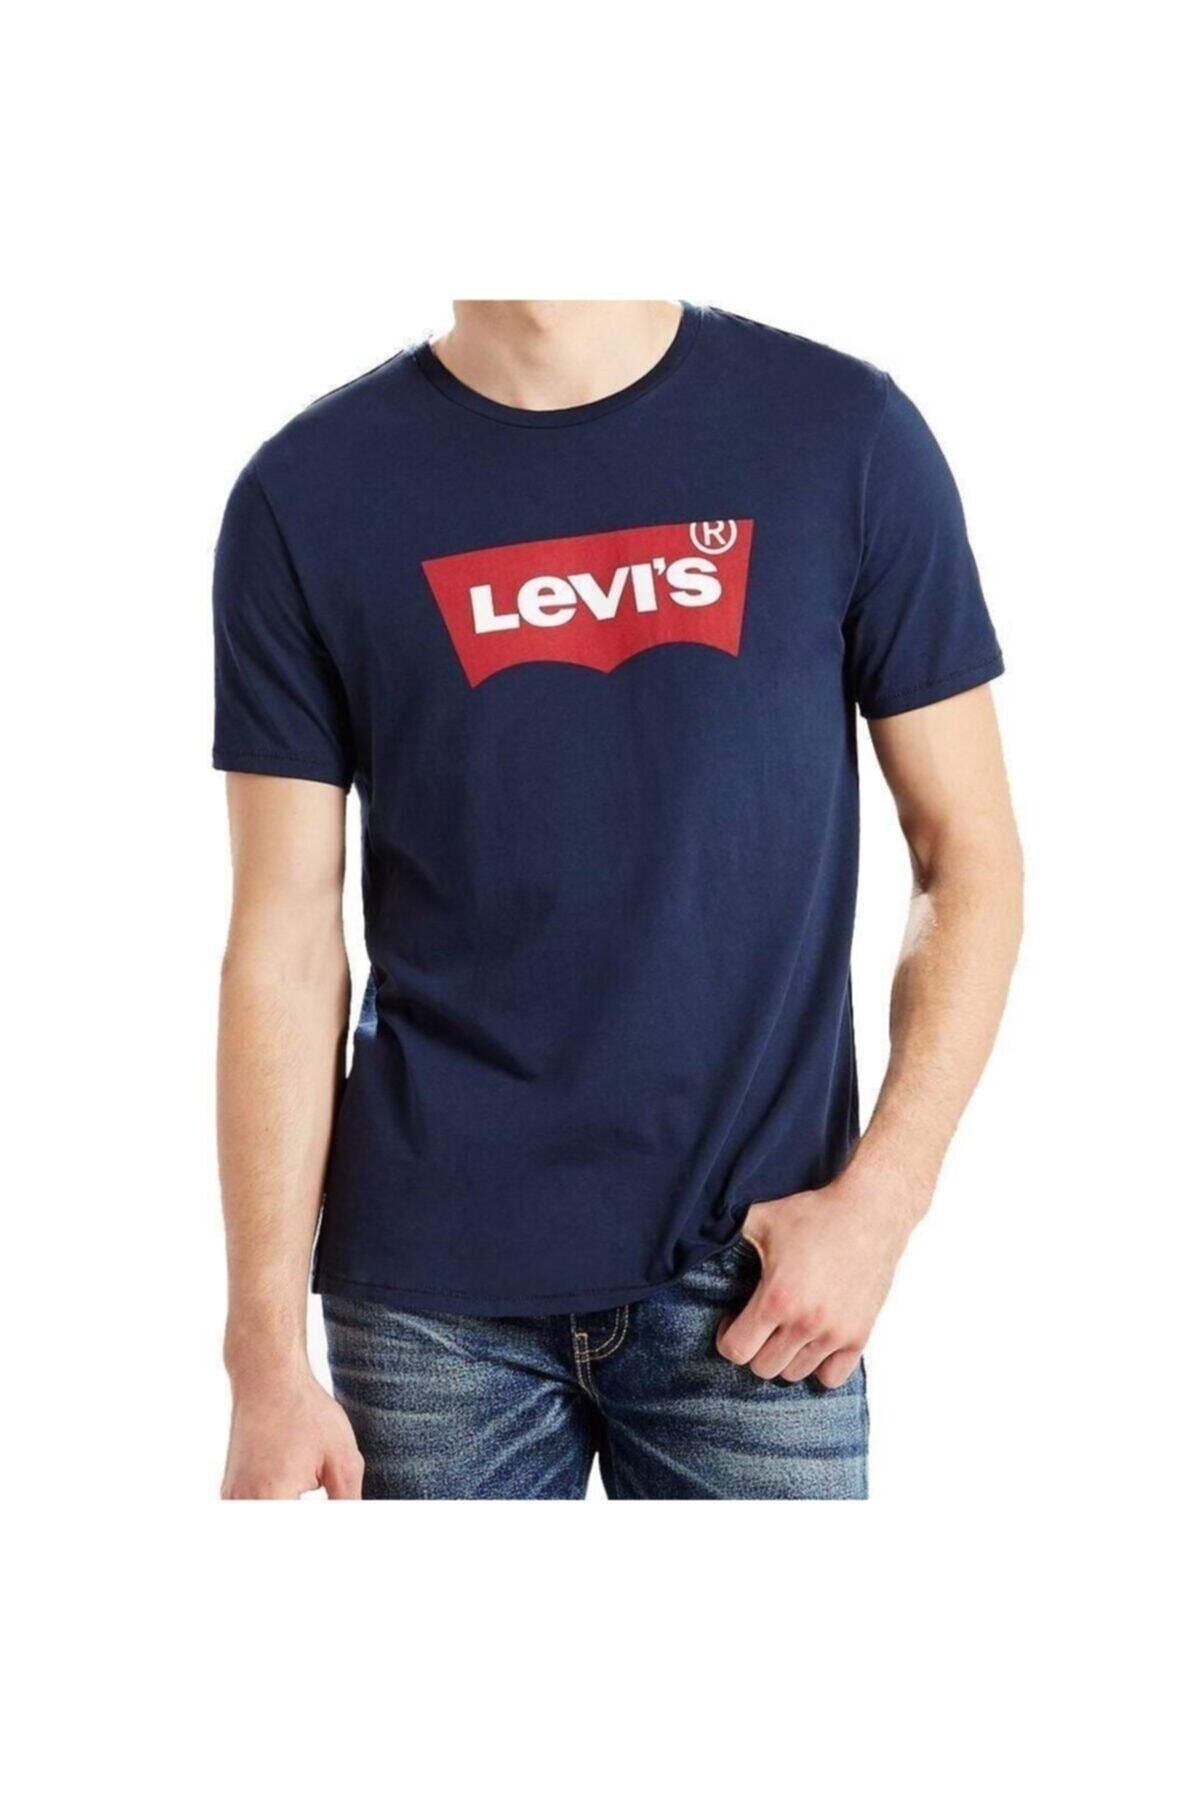 Levi's تی شرت آبی سرمه ای با لوگو مردانه 17783-0313